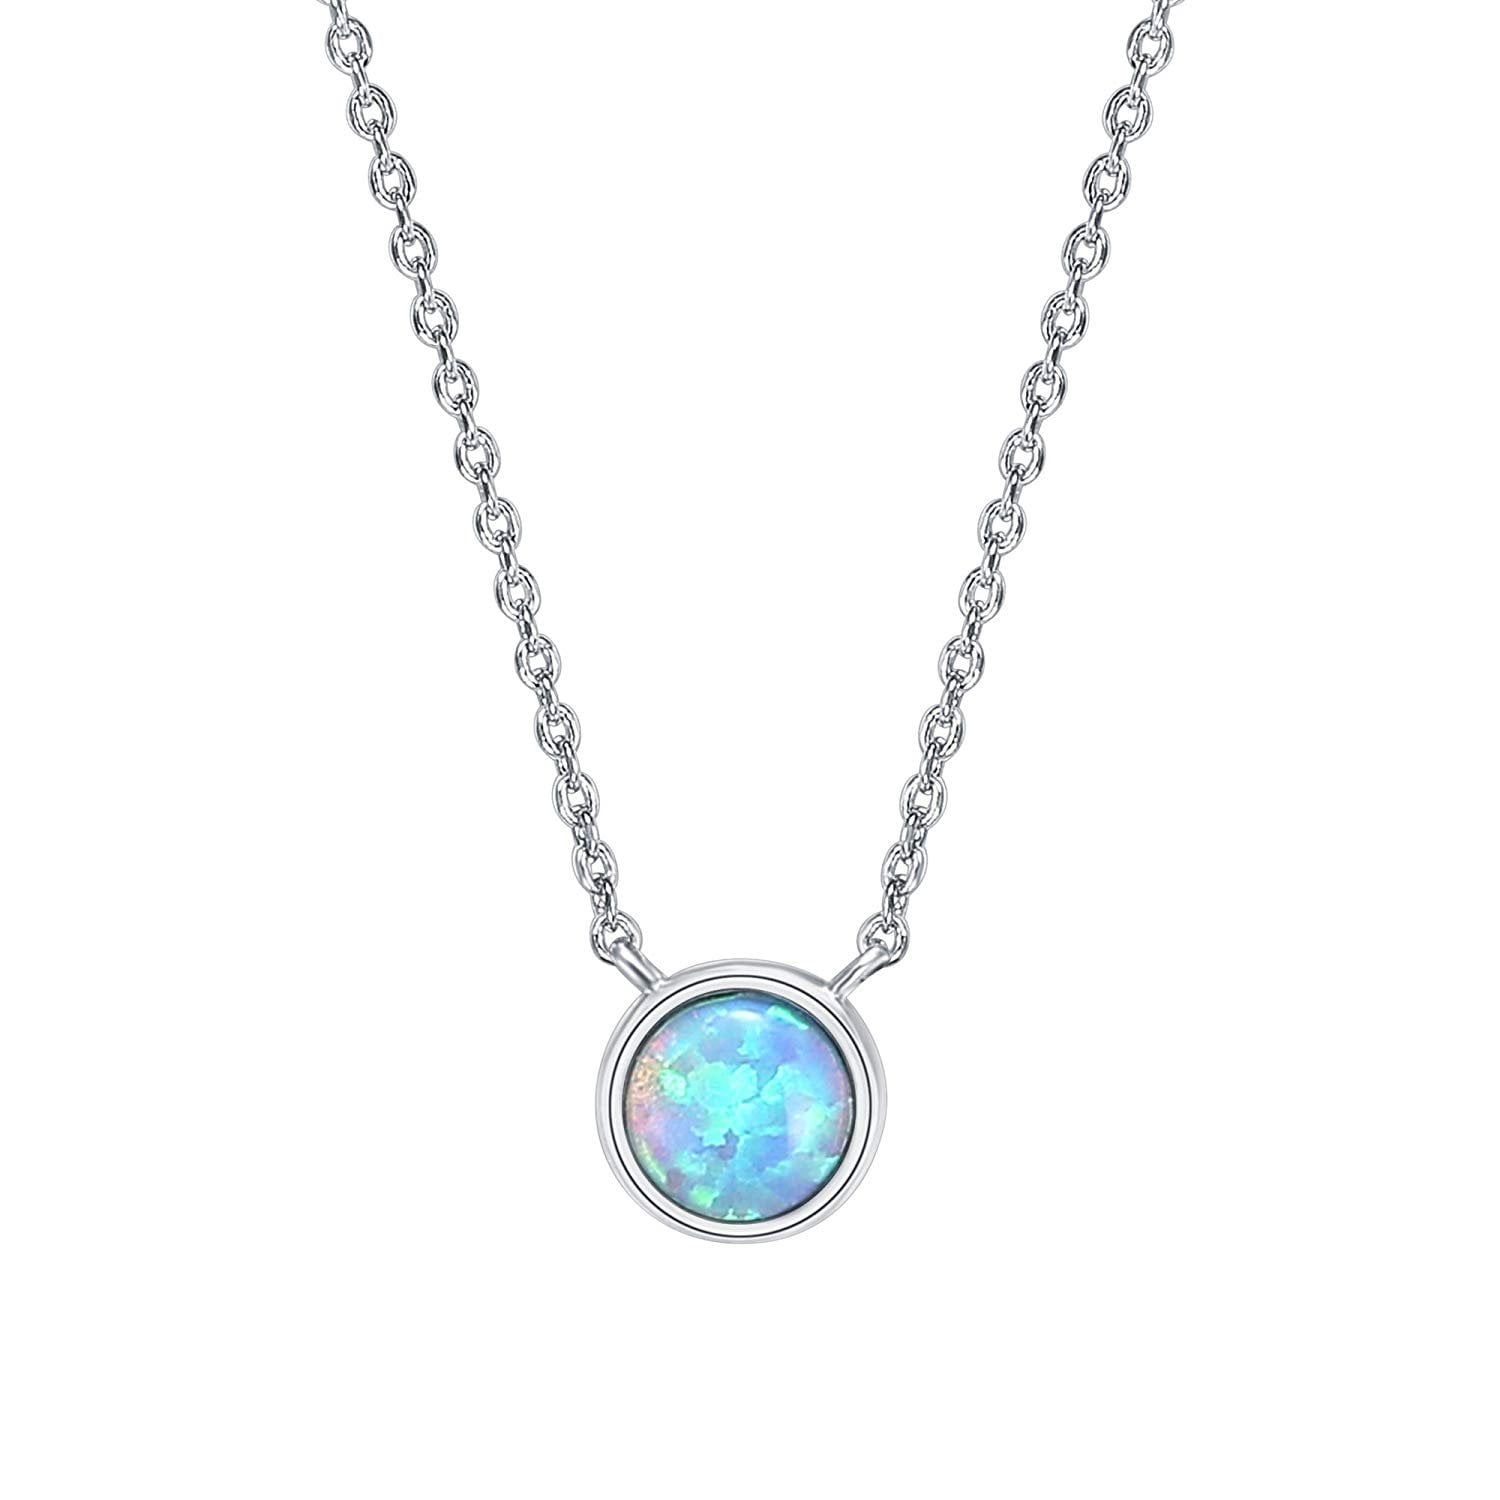 Round blue opal pendant - Monte Cristo